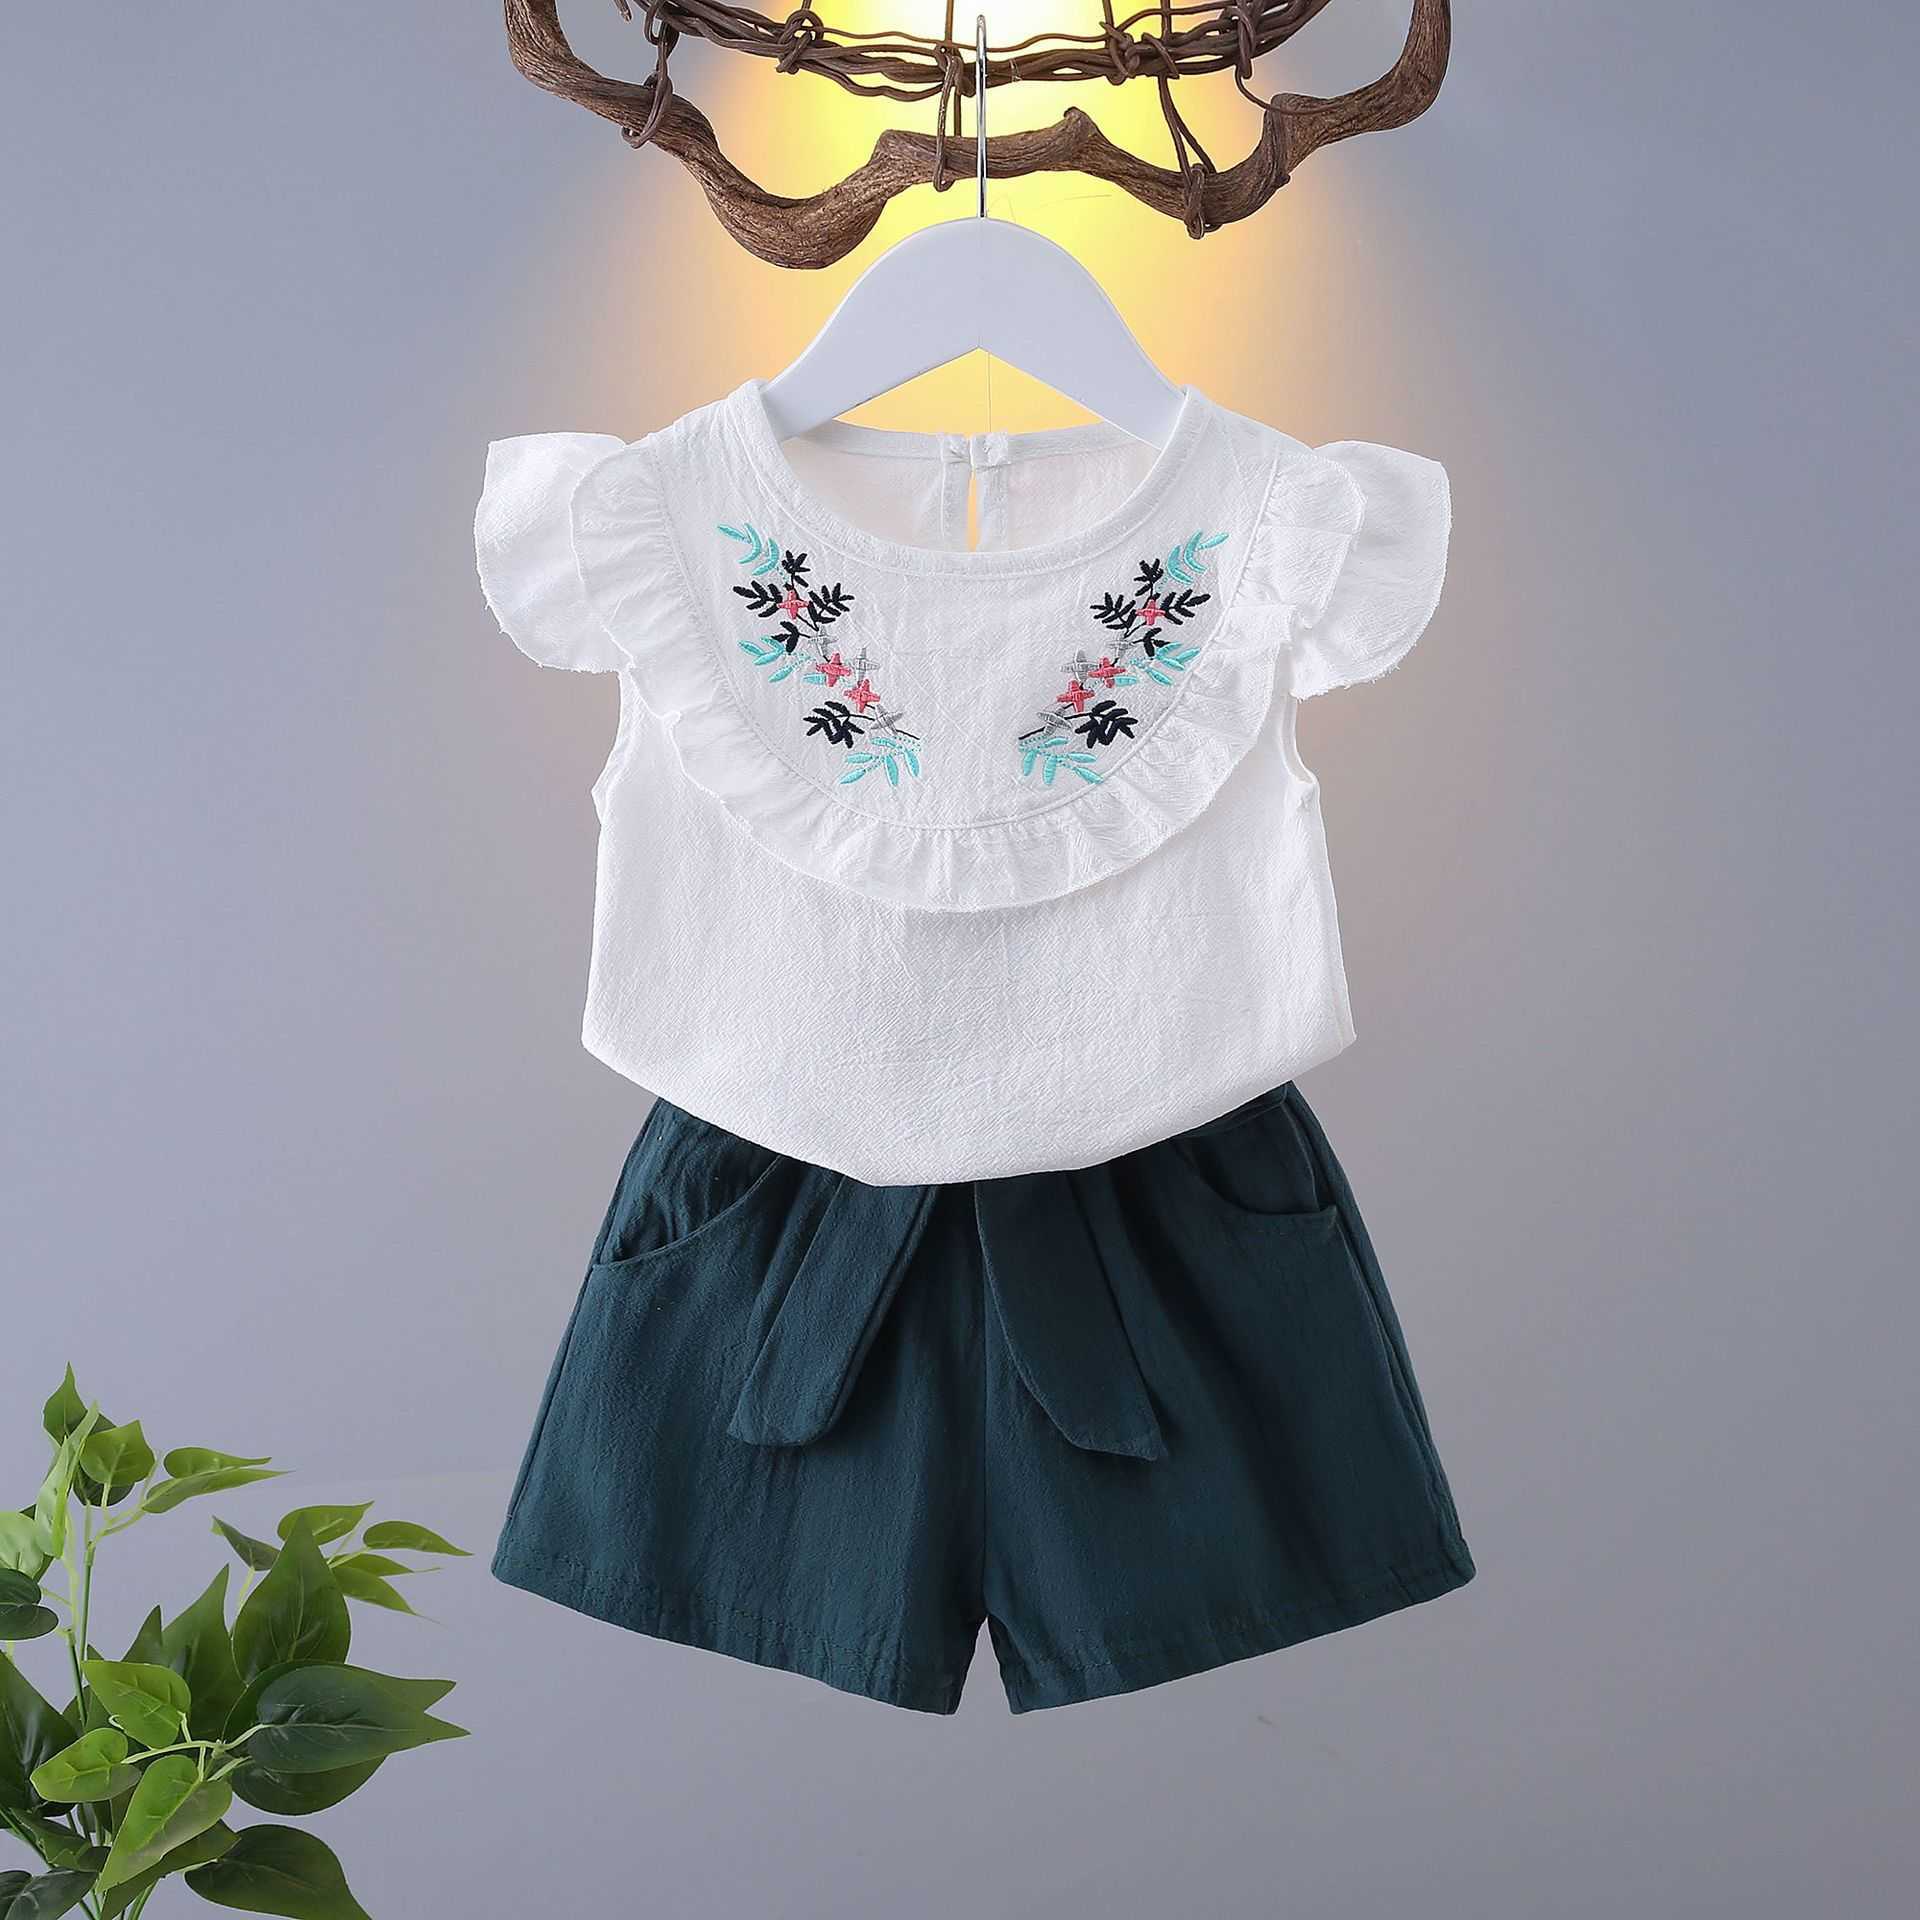 Lzh yaz gündelik spor takım elbise çocuk kostüm kolsuz yeni doğan bebek giyim setleri kızlar için kıyafet